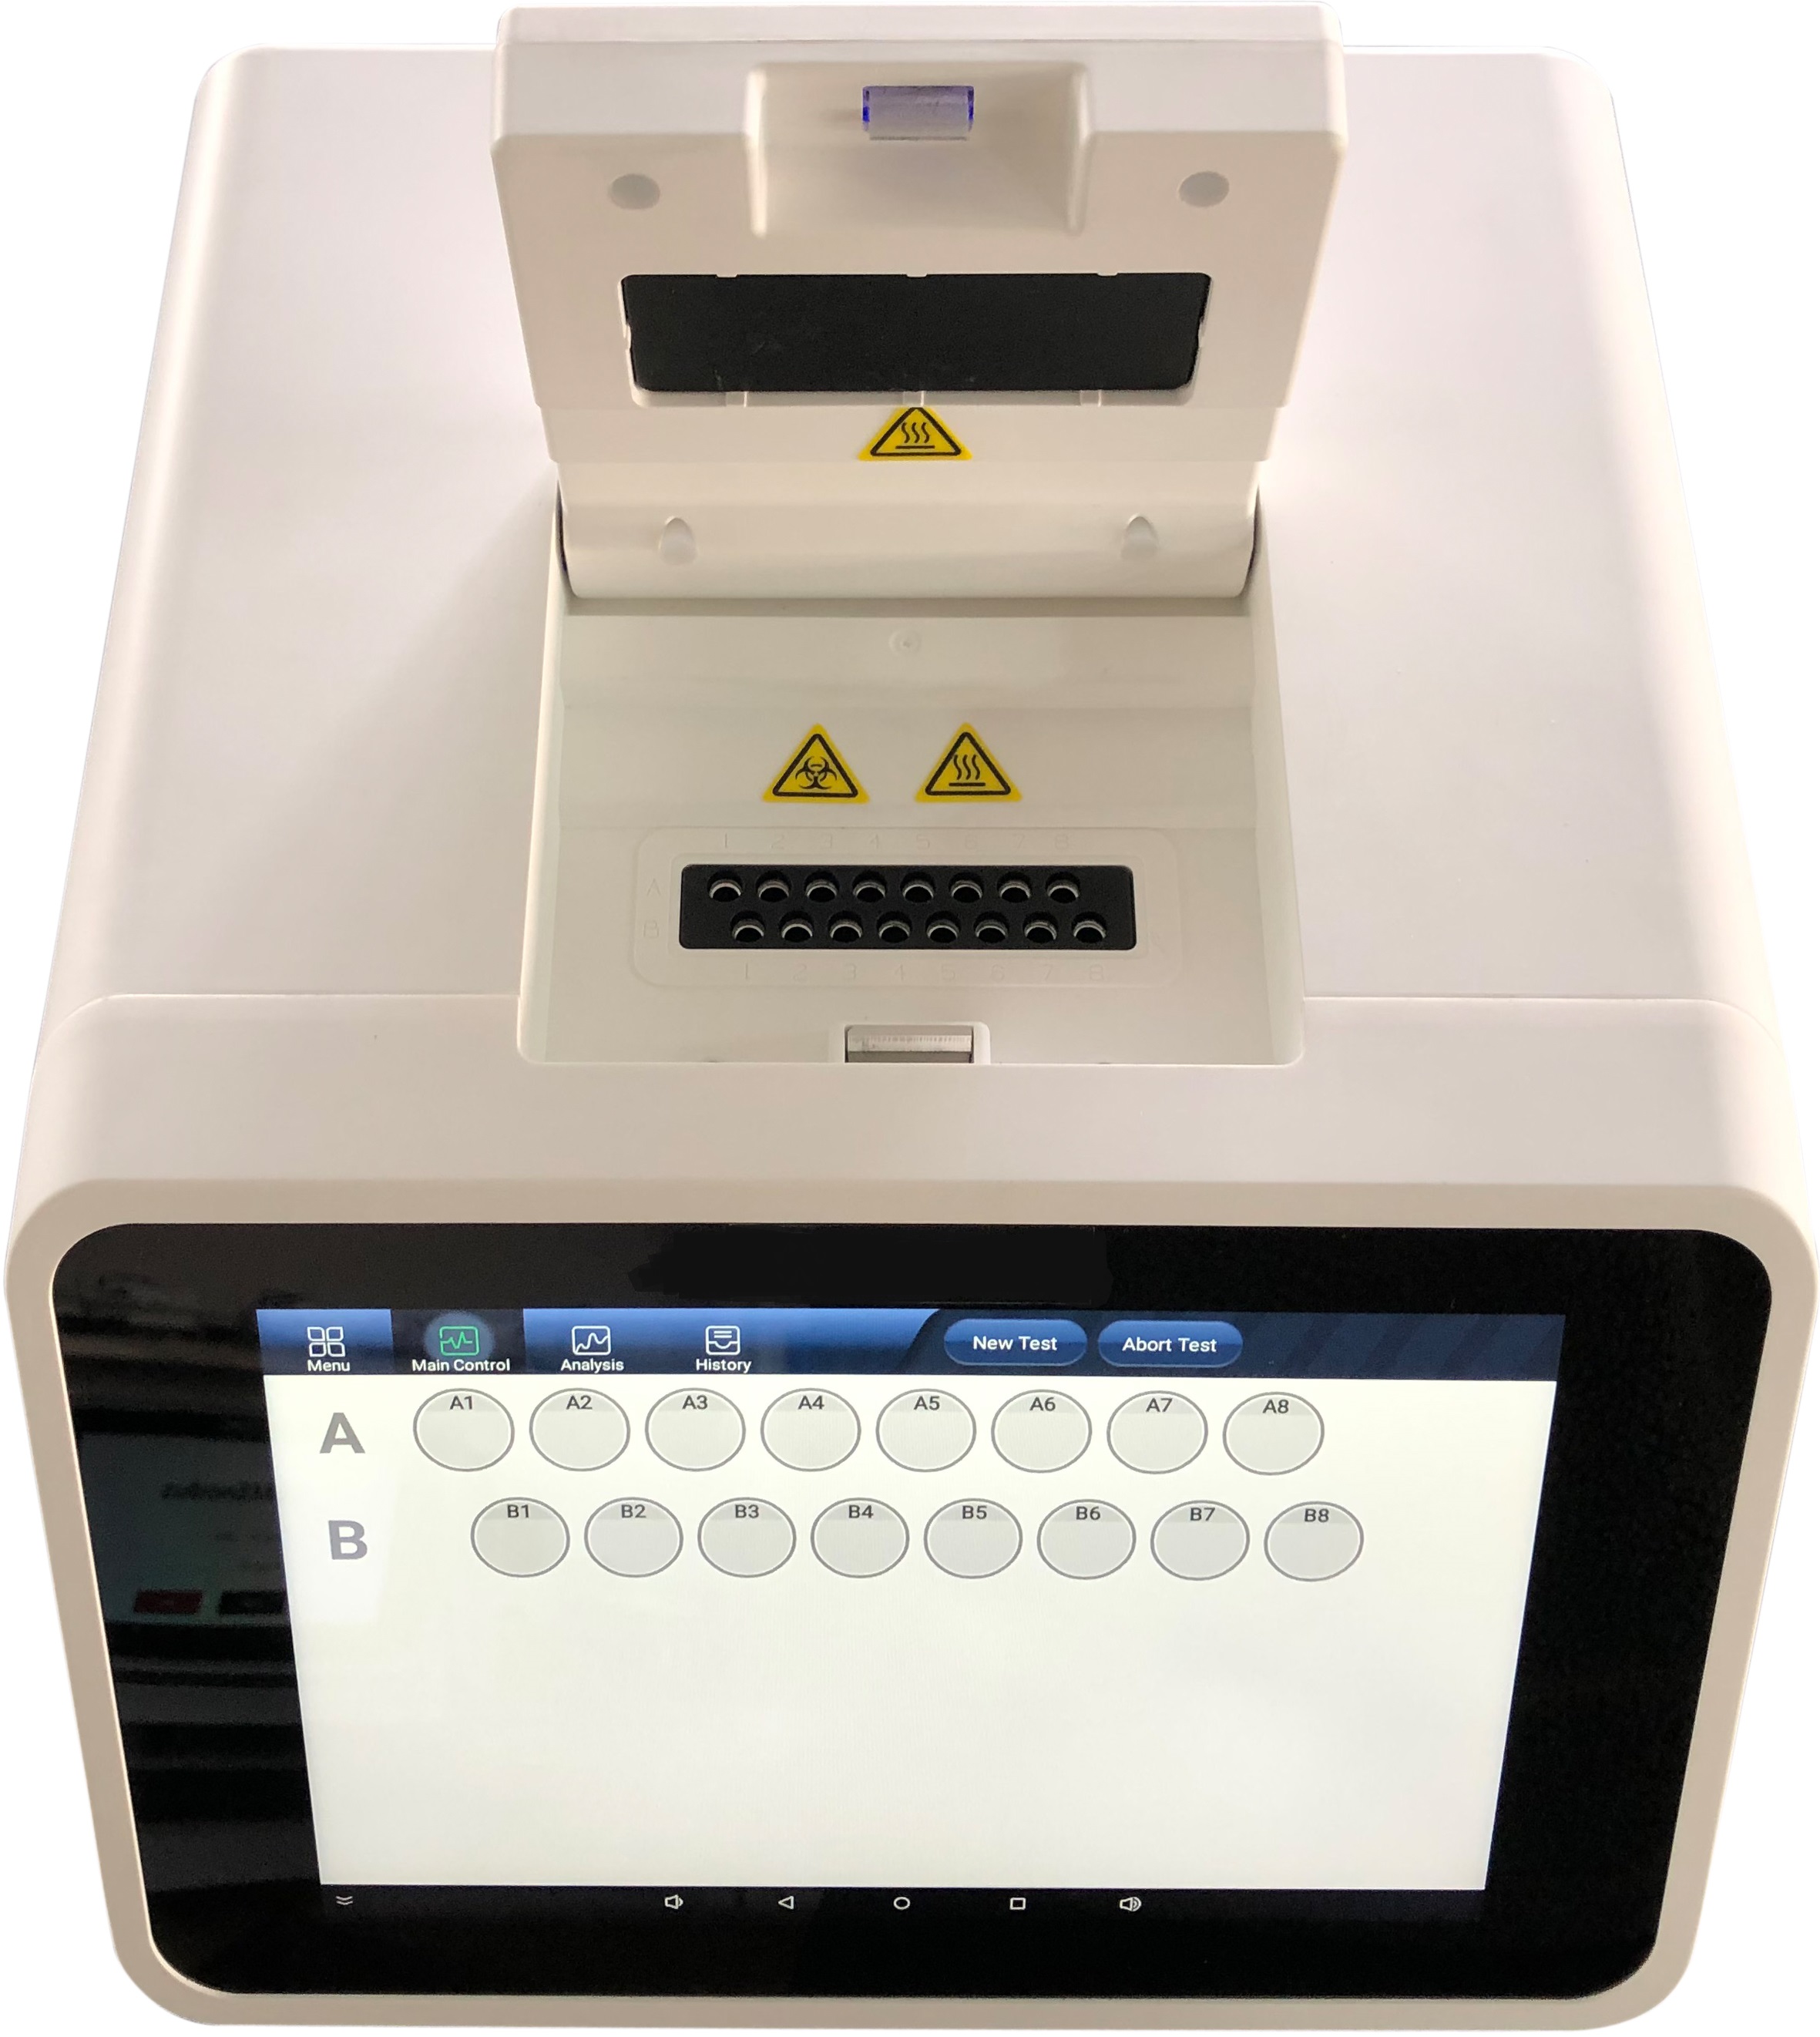          POC PCR Egens® Real-time Fluorescence Quantitative PCR(YS-Qpcr-1) Equipment